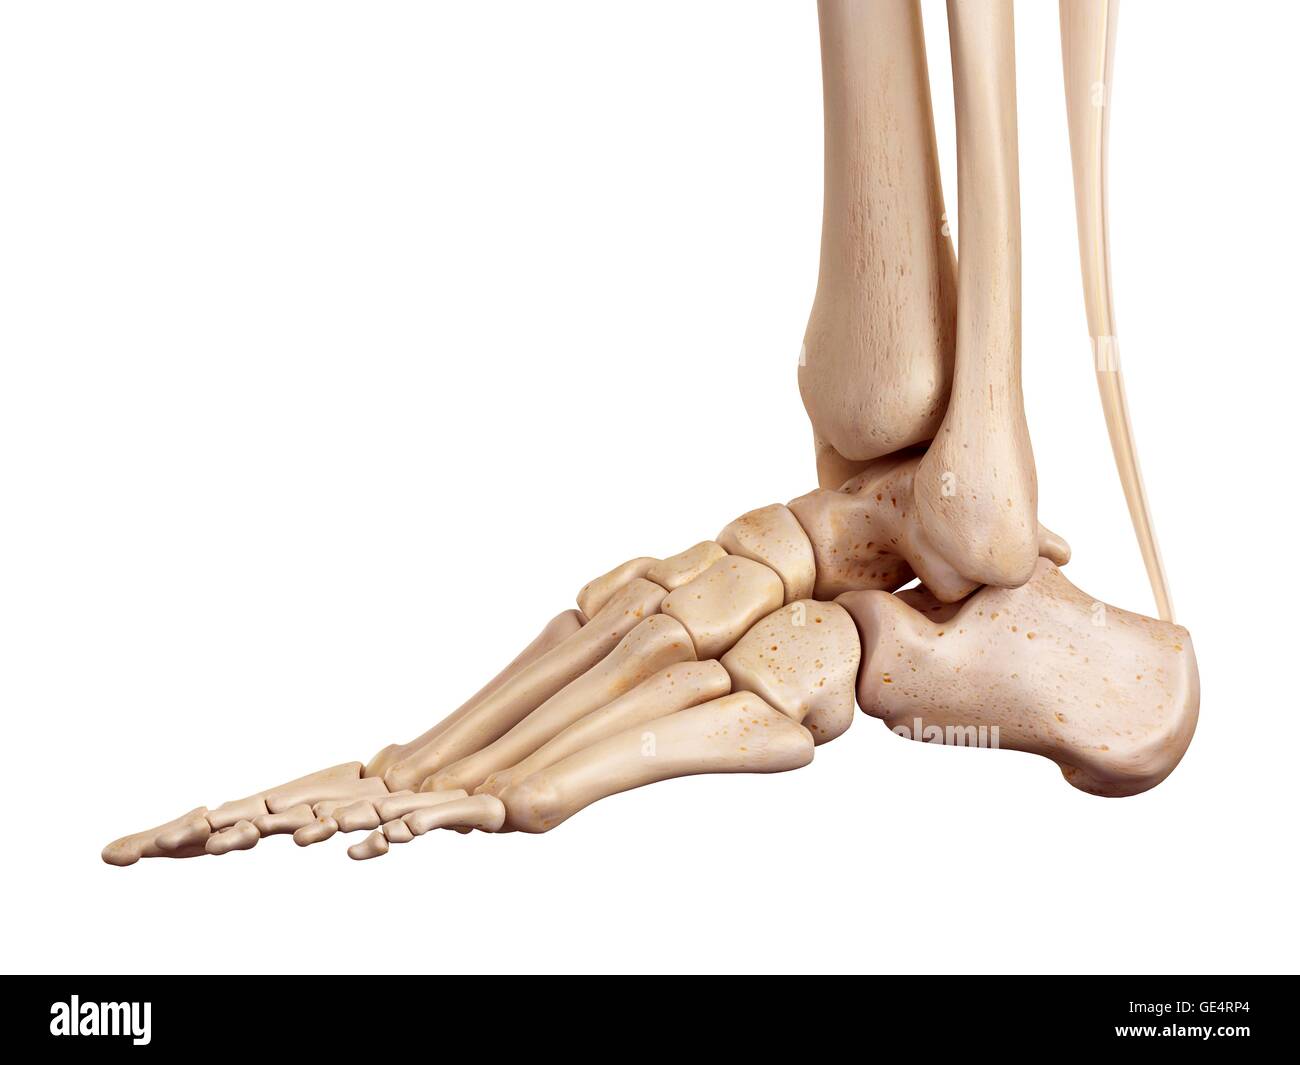 Human foot anatomy, illustration. Stock Photo